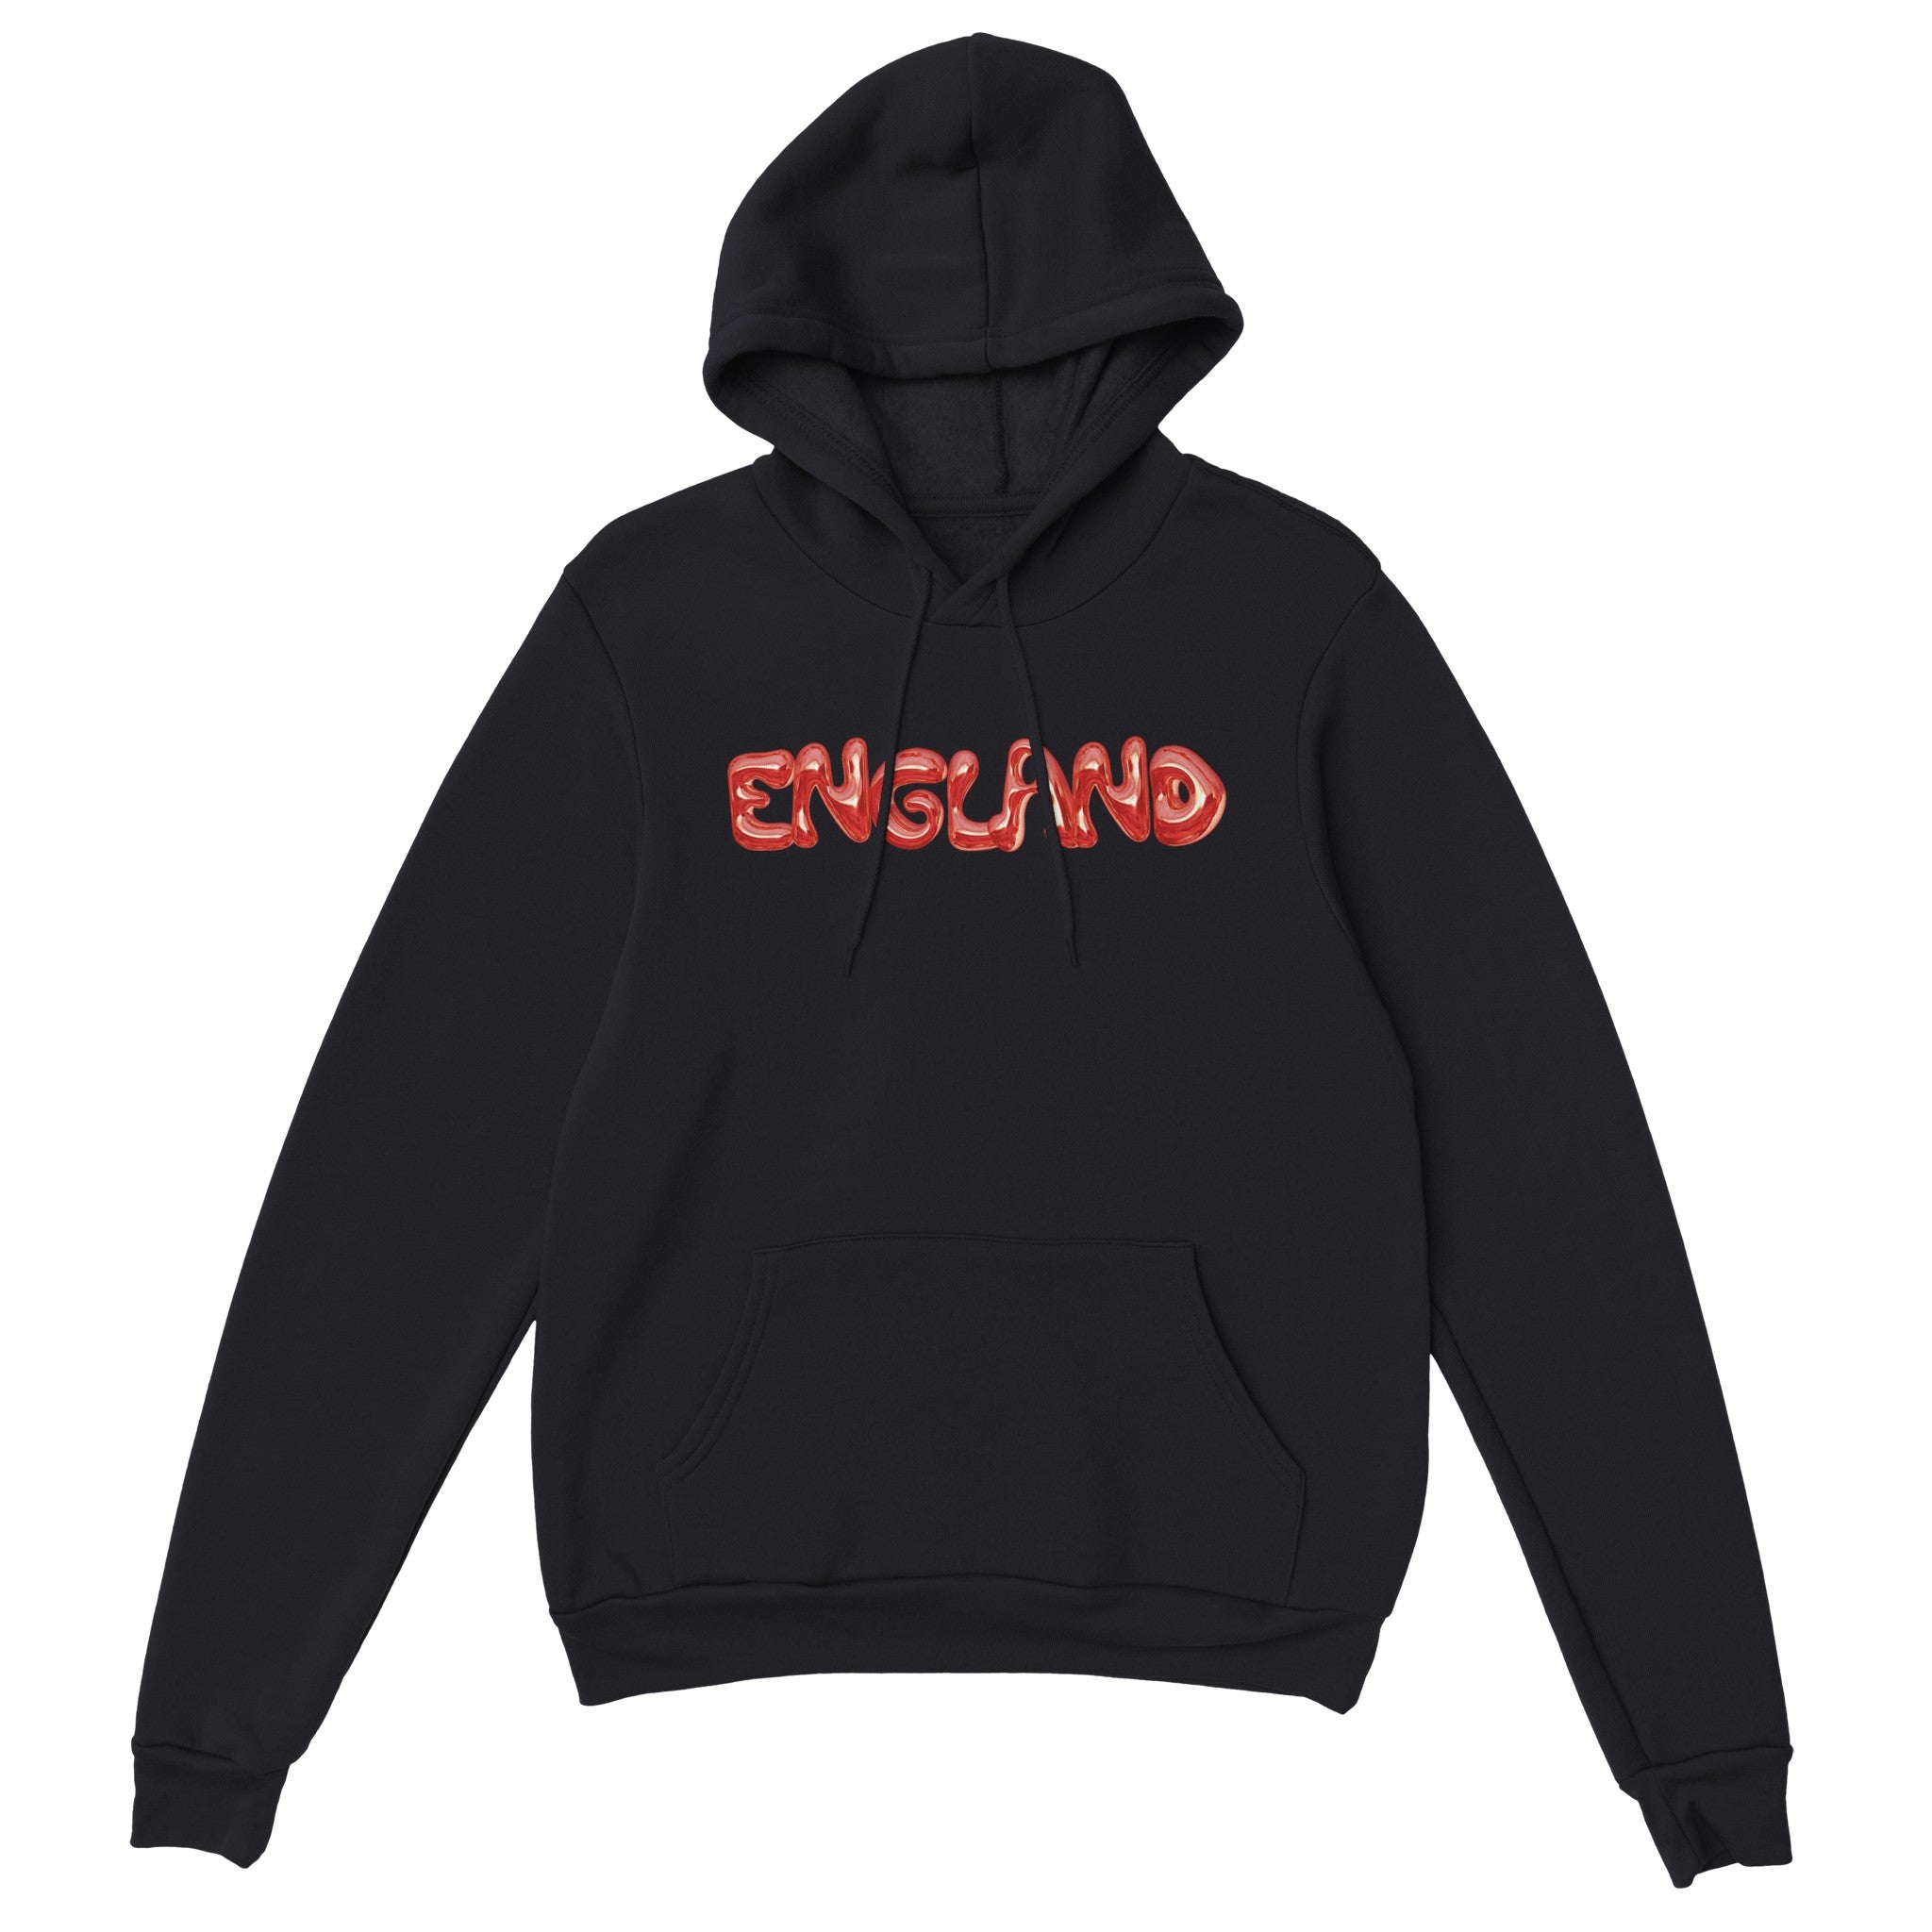 'England' hoodie - In Print We Trust